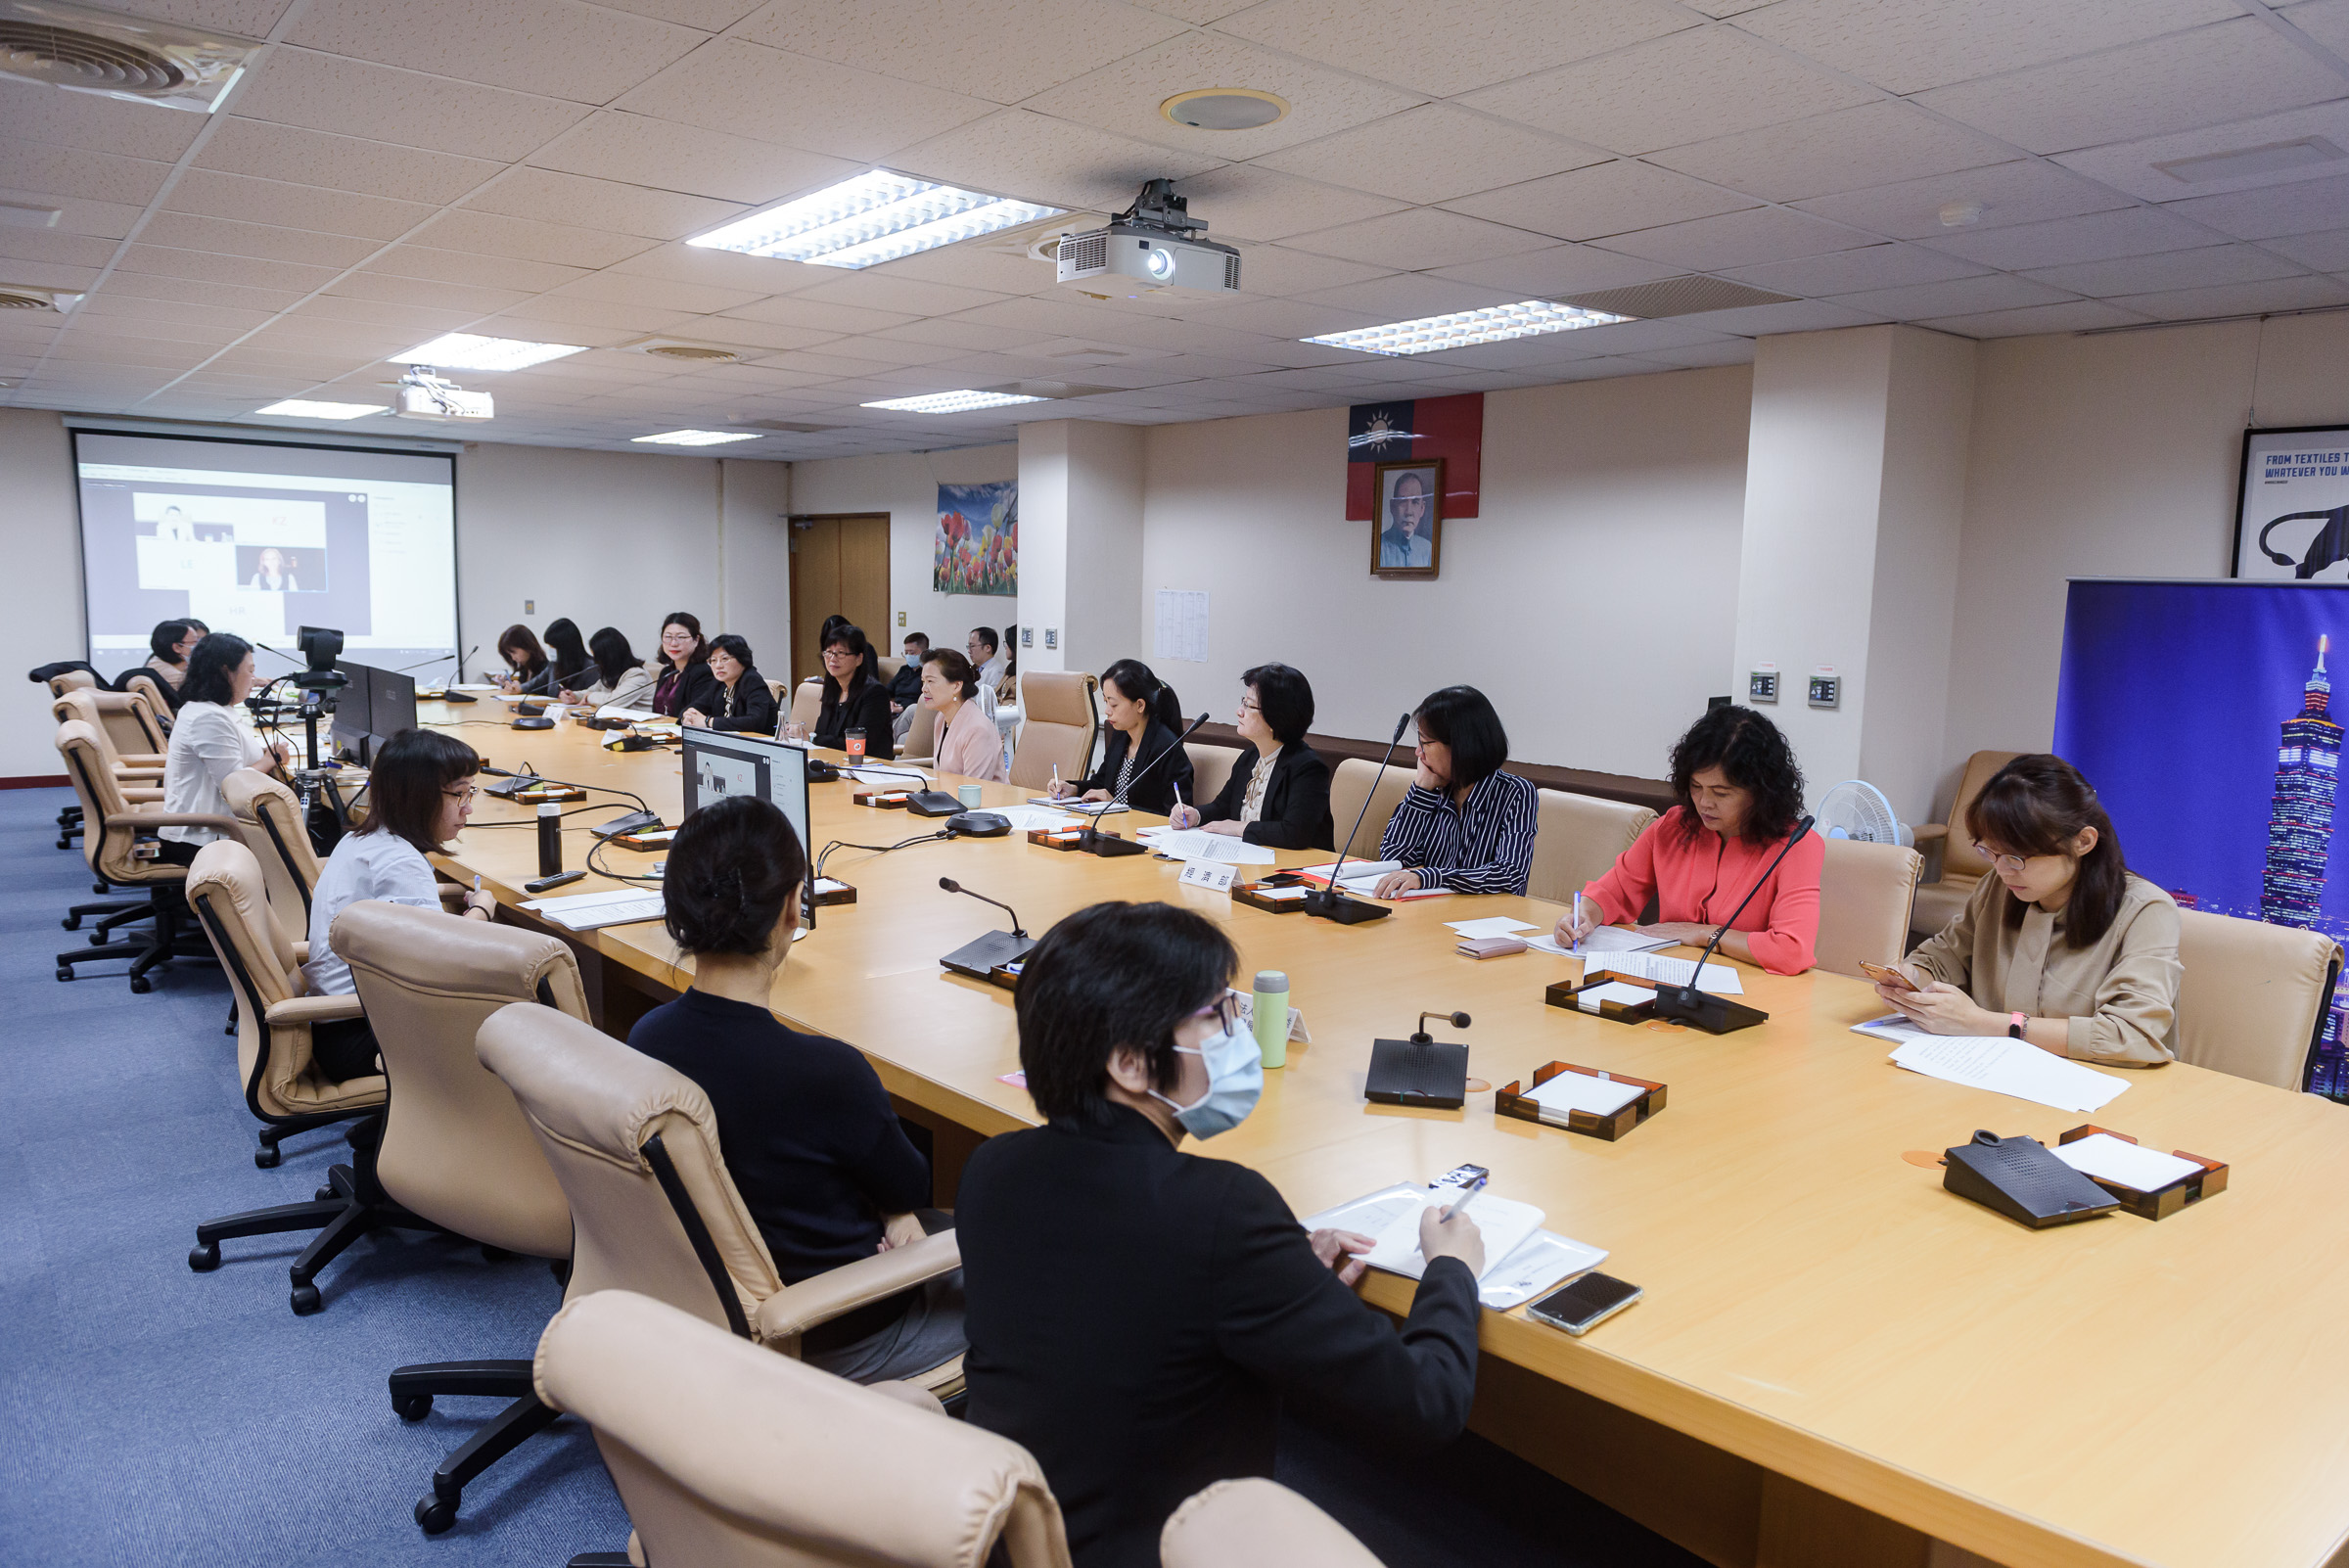 รัฐมนตรีว่าการกระทรวงเศรษฐการ หวังเหม่ยฮวา (王美花) ได้นำคณะตัวแทนจากหน่วยงานภาครัฐและภาคเอกชนที่เกี่ยวข้อง เข้าร่วมการประชุมเอเปคด้านสตรีและเศรษฐกิจ (Women and the Economy Forum, WEF)  ภาพจาก／สำนักงานความเสมอภาคทางเพศ สภาบริหาร สาธารณรัฐจีน (ไต้หวัน)